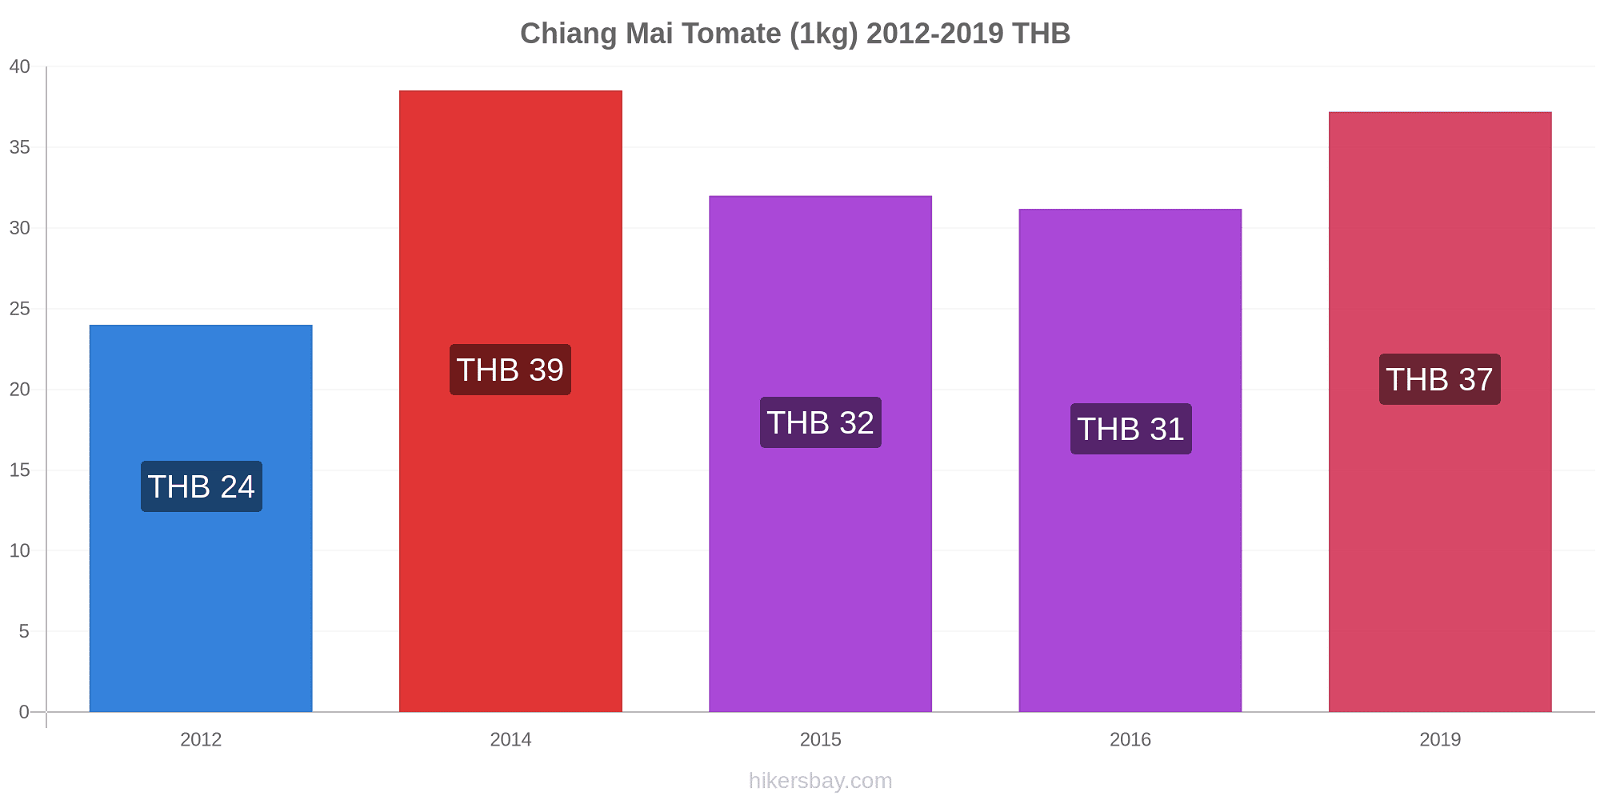 Chiang Mai variação de preço Tomate (1kg) hikersbay.com